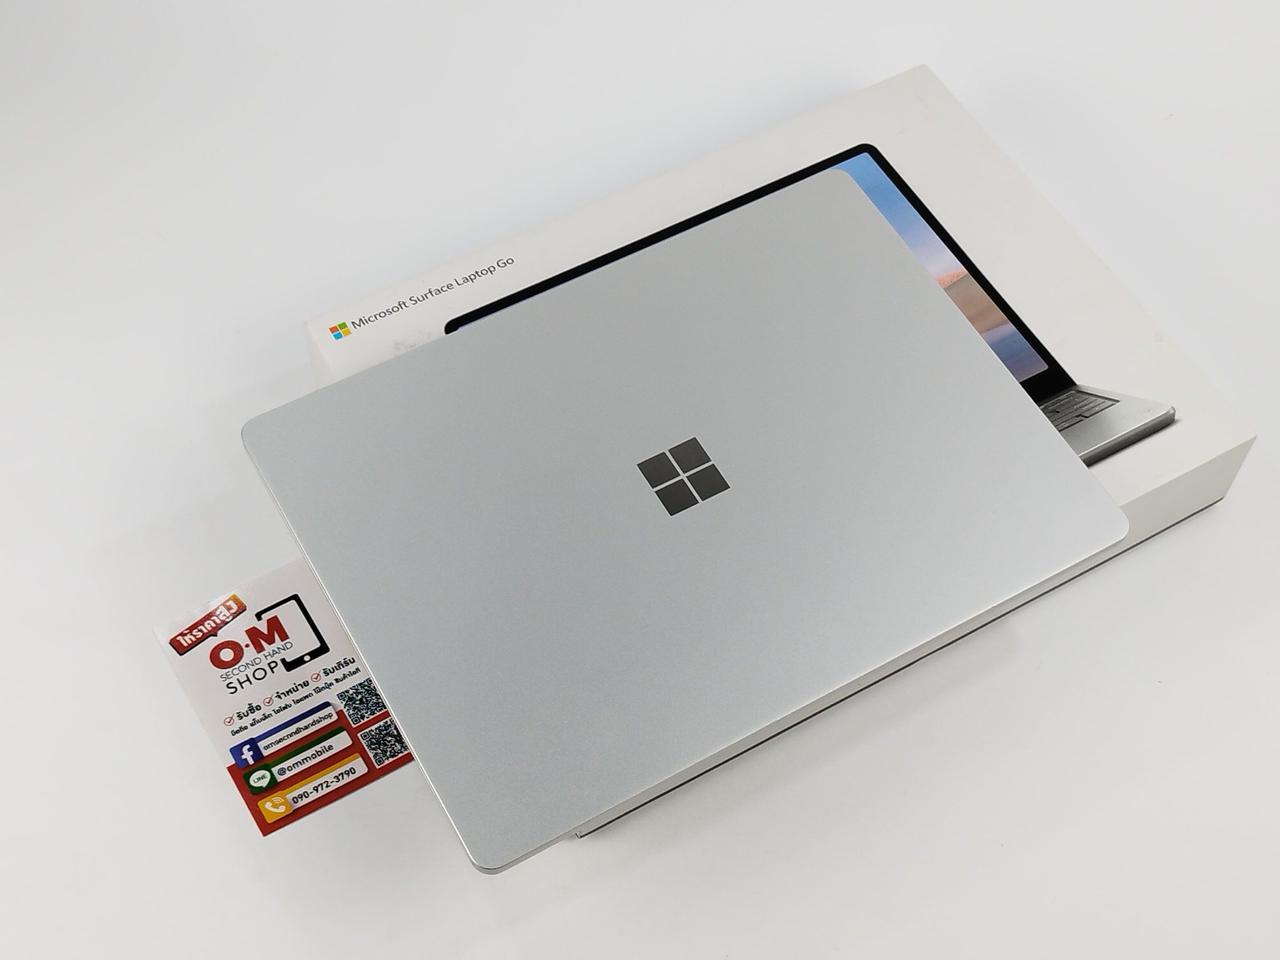 ขาย/แลก Microsoft Surface Laptop Go i5-1035G1 4/64 จอ Touchscreen ศูนย์ไทย สวยมาก ครบกล่อง เพียง 12,900 บาท  รูปที่ 3